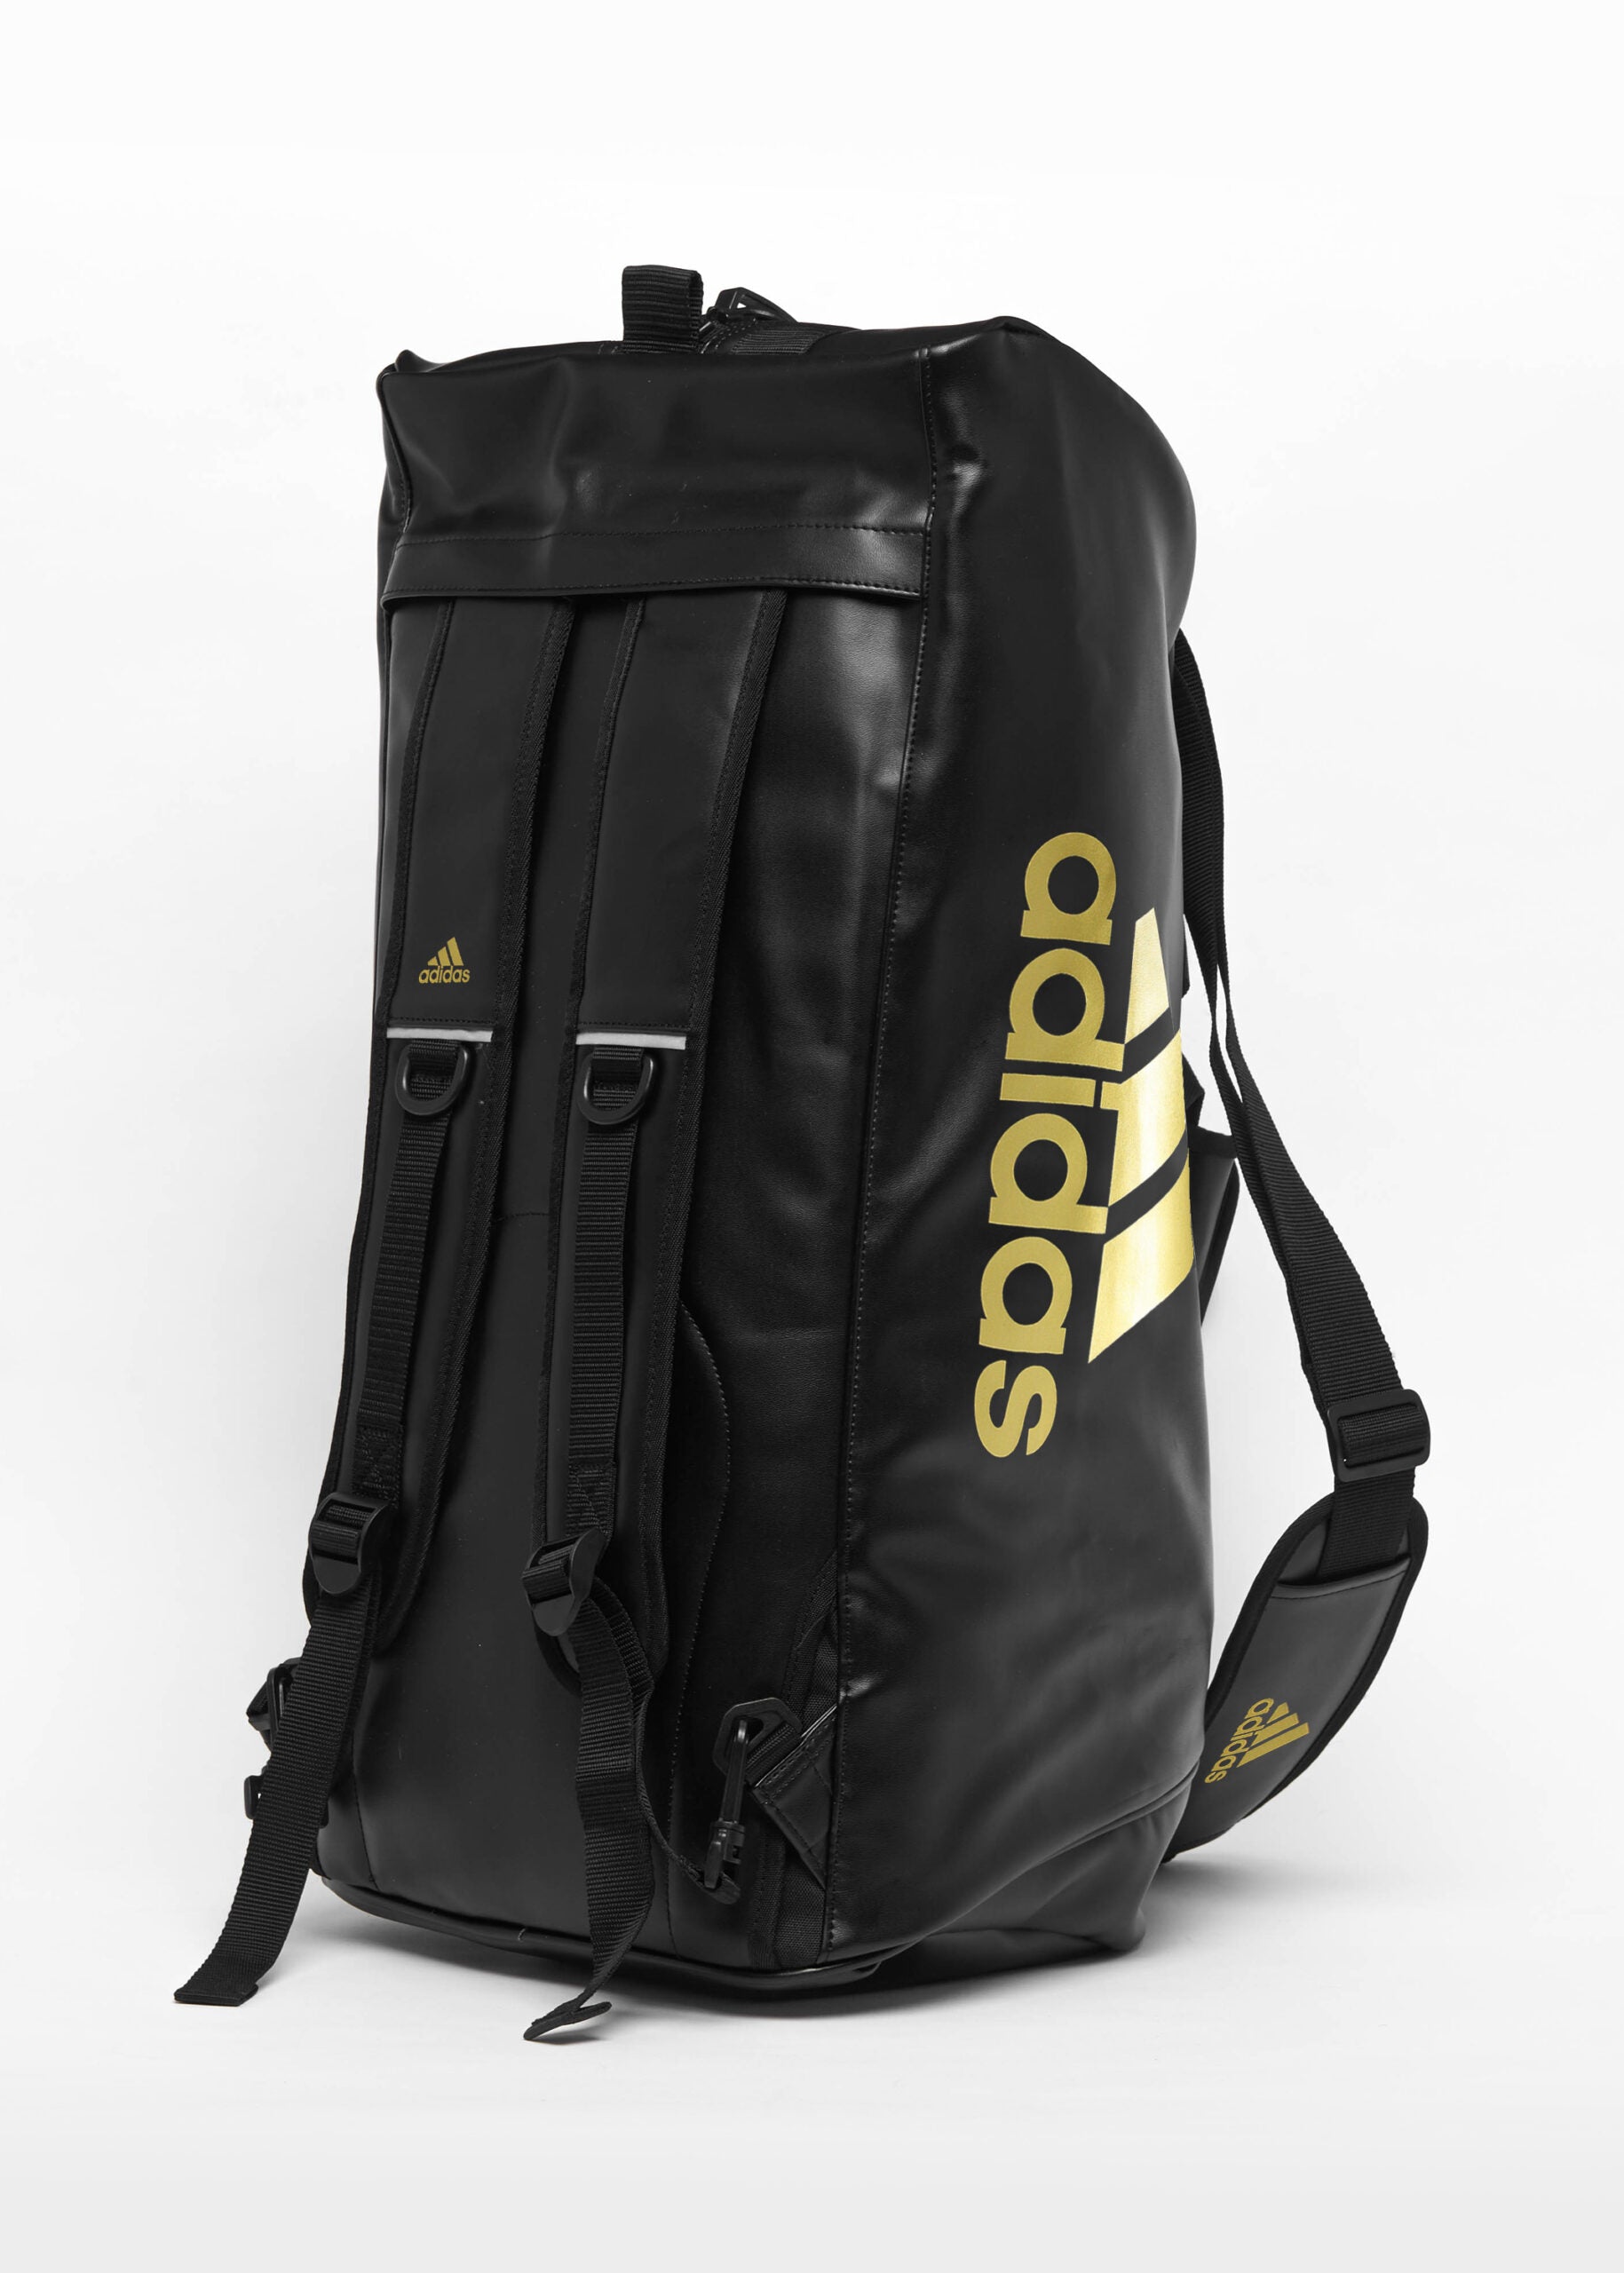 Adiacc051 2in1 Bag Black Gold Side 03